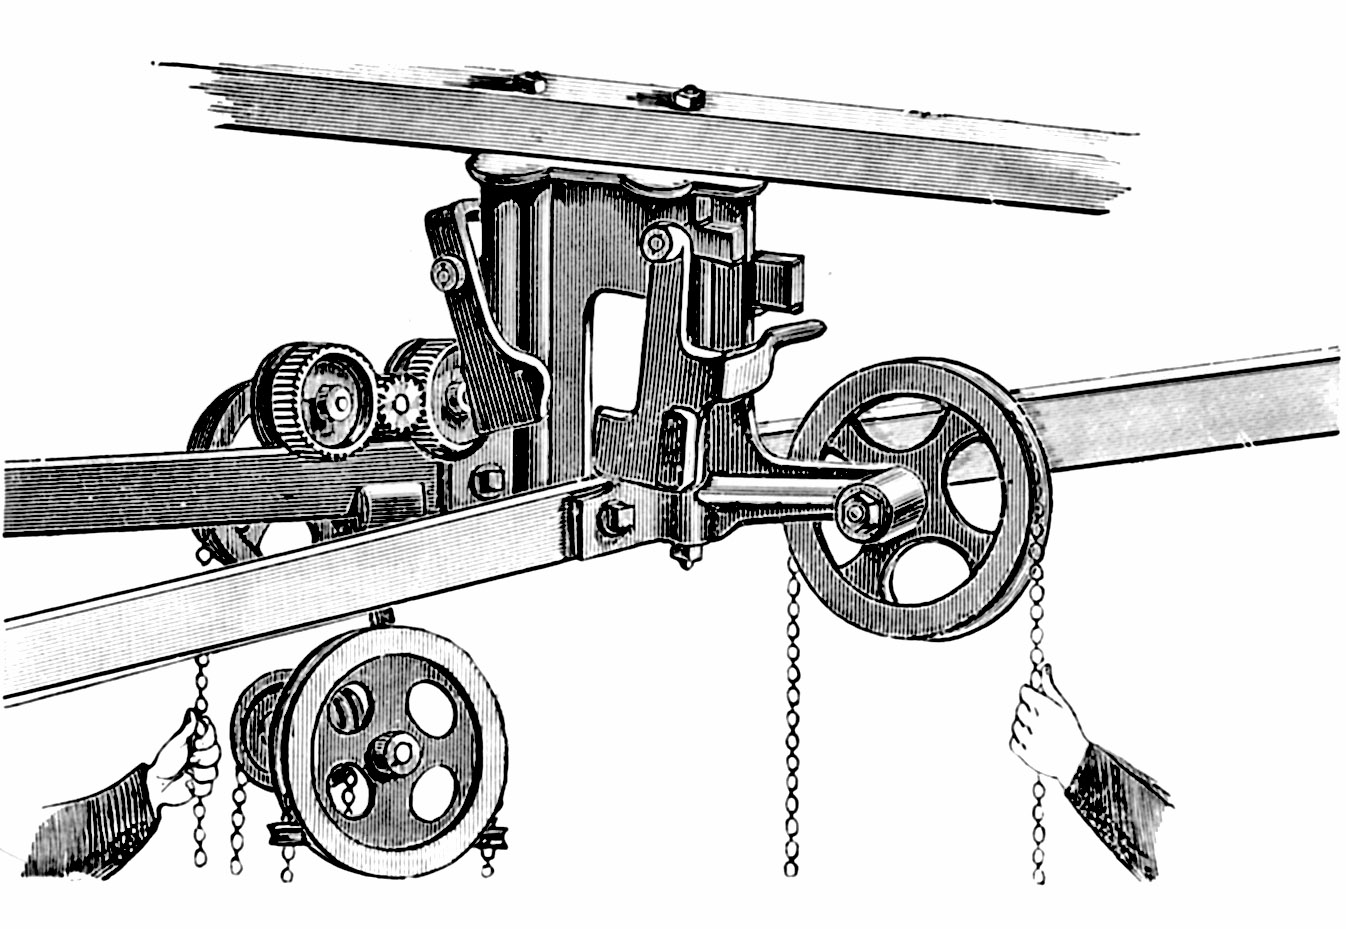 Edwin Harrington Patent Overhead Tramway Switch, page 134